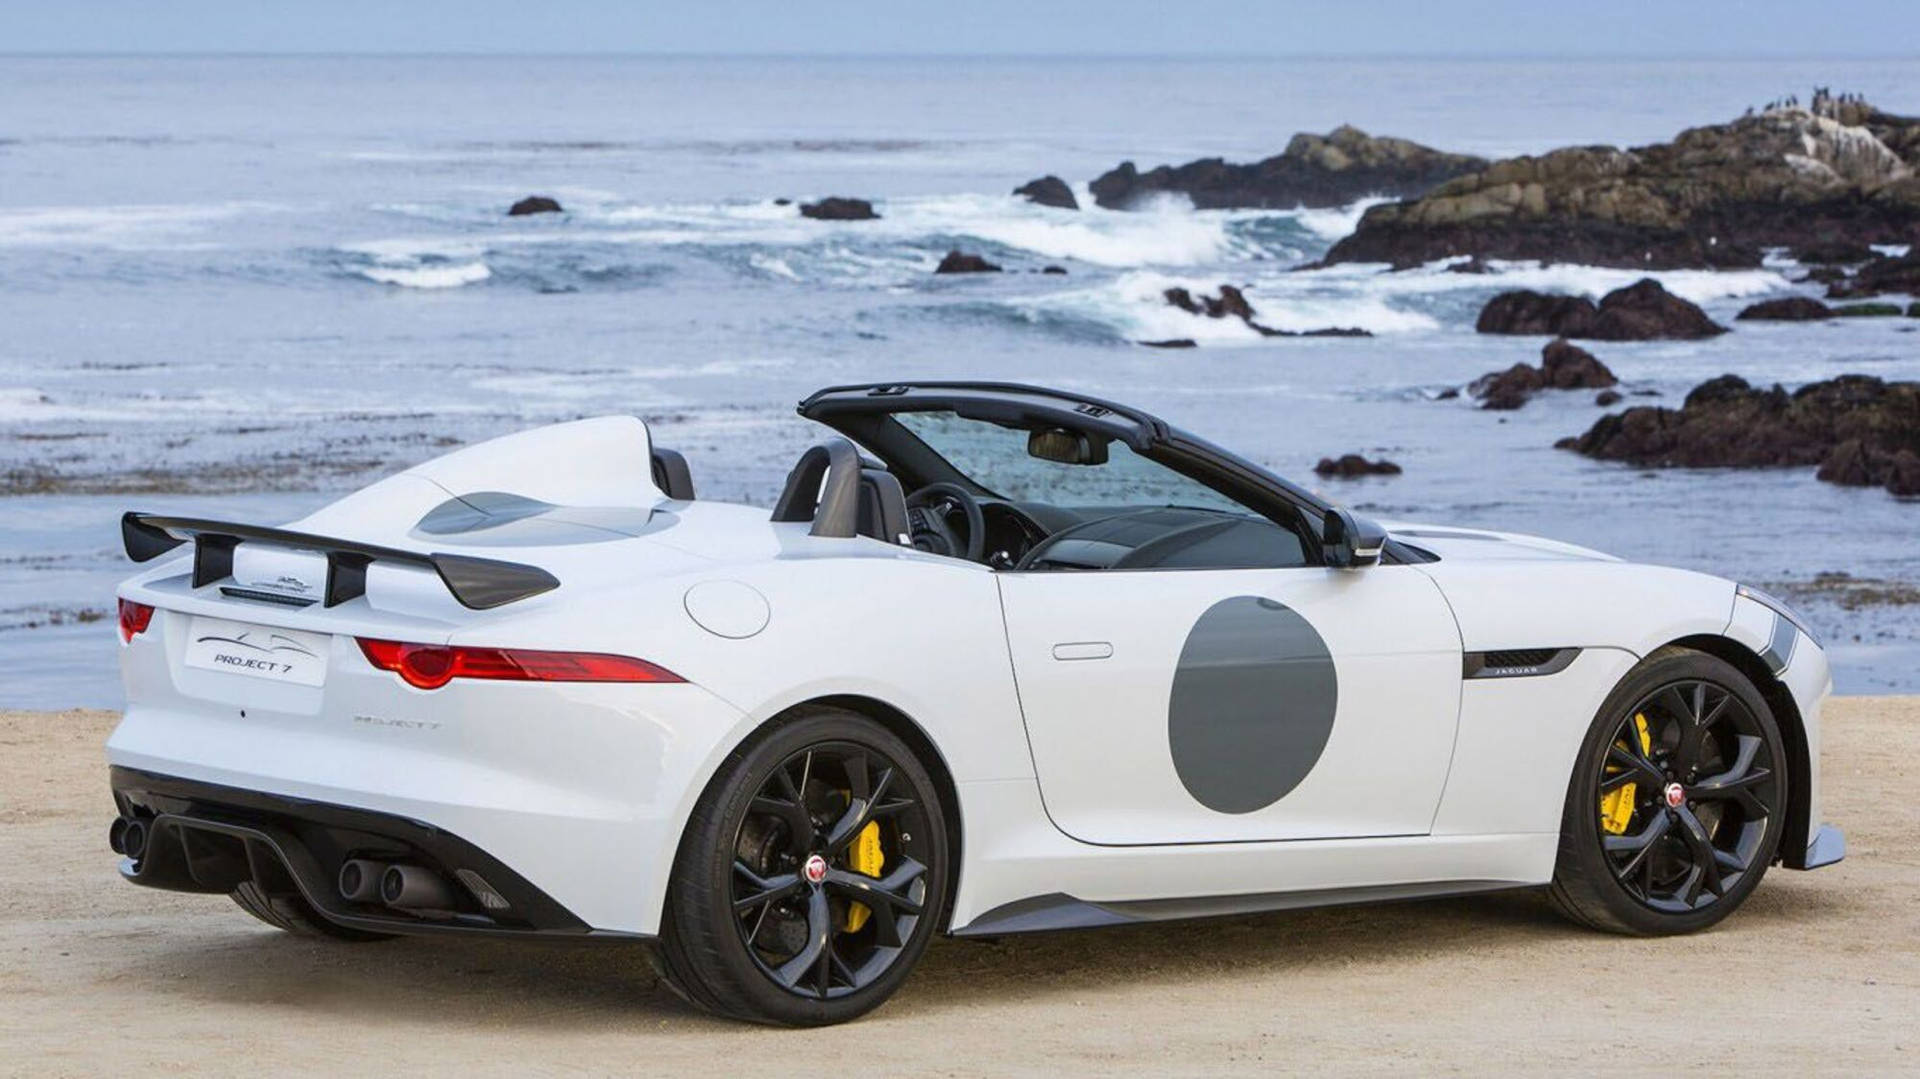 Luxurious Modern Jaguar Car on a Beach Wallpaper